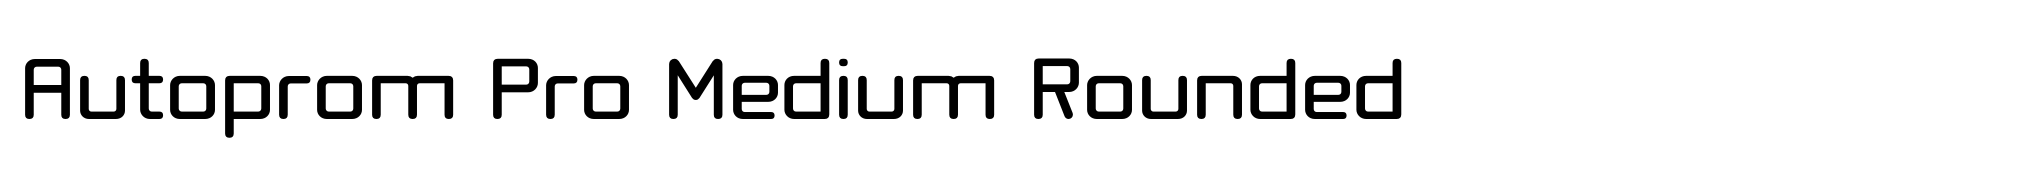 Autoprom Pro Medium Rounded image